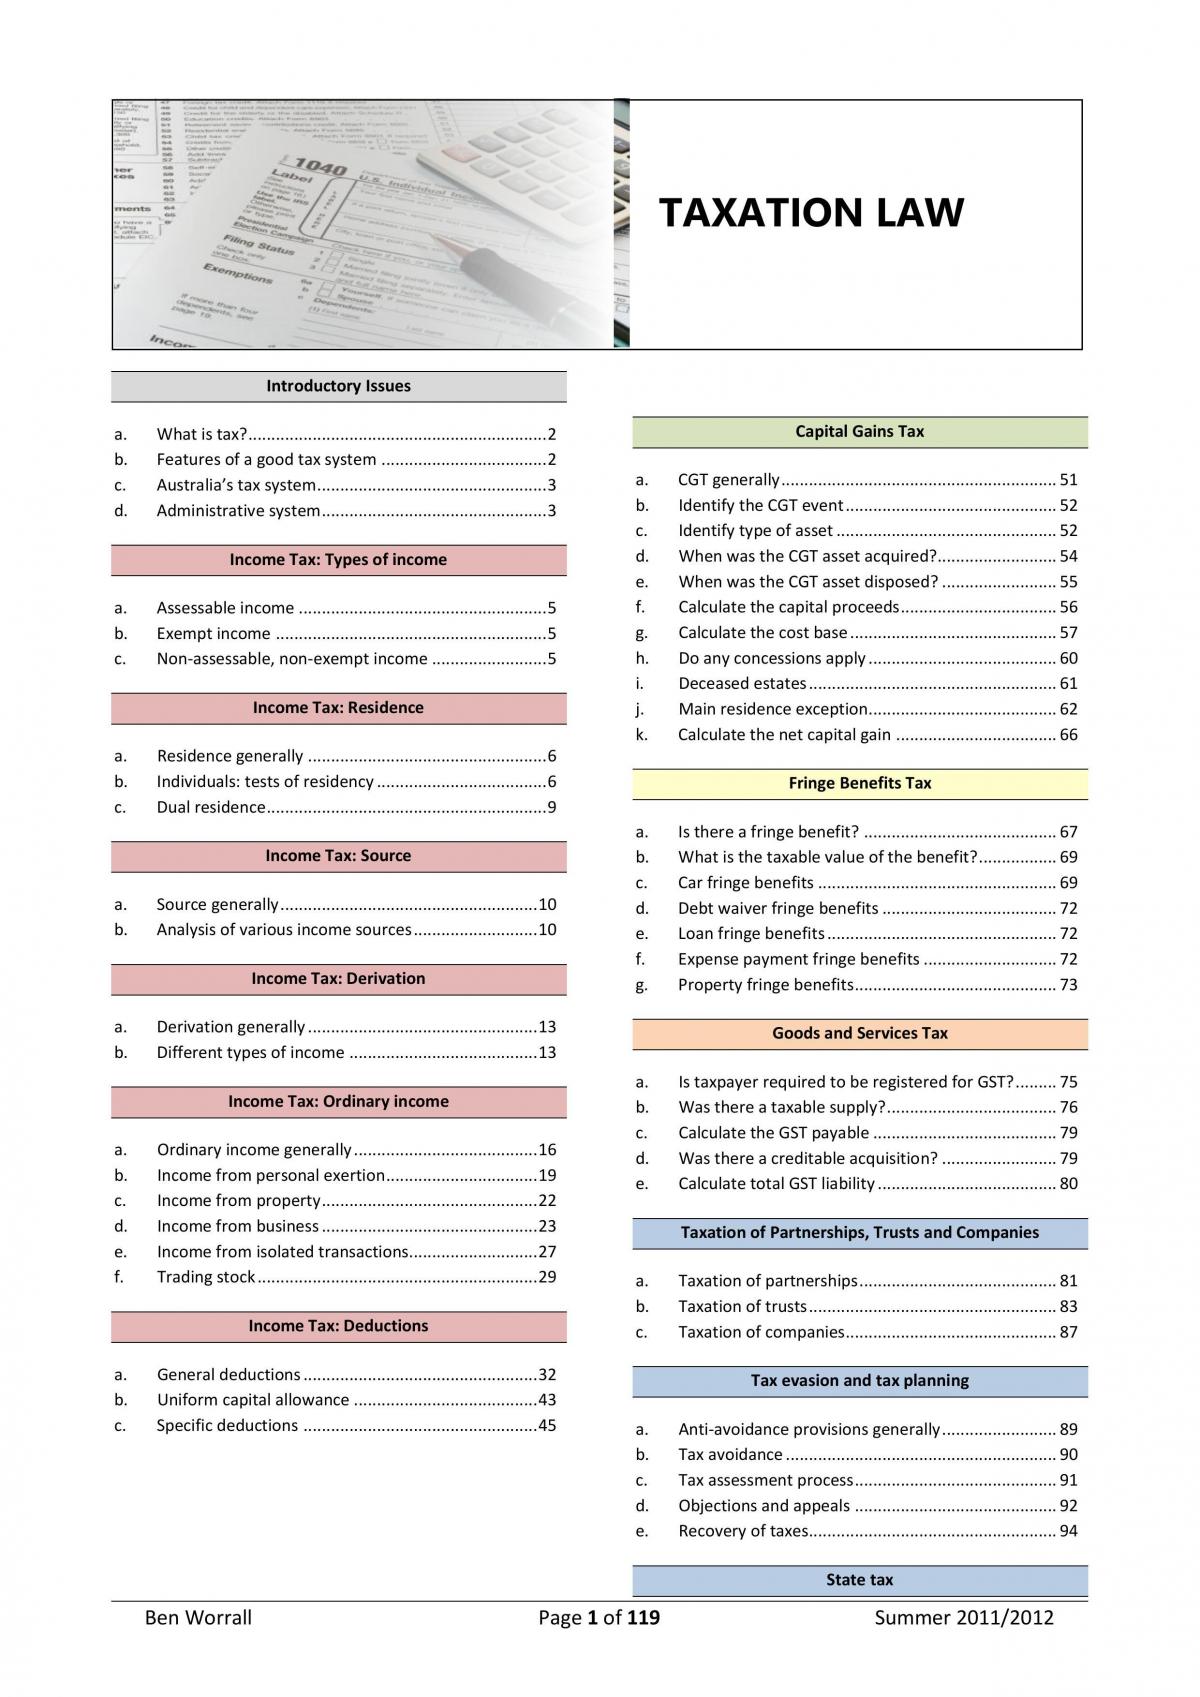 dissertation topics in taxation pdf